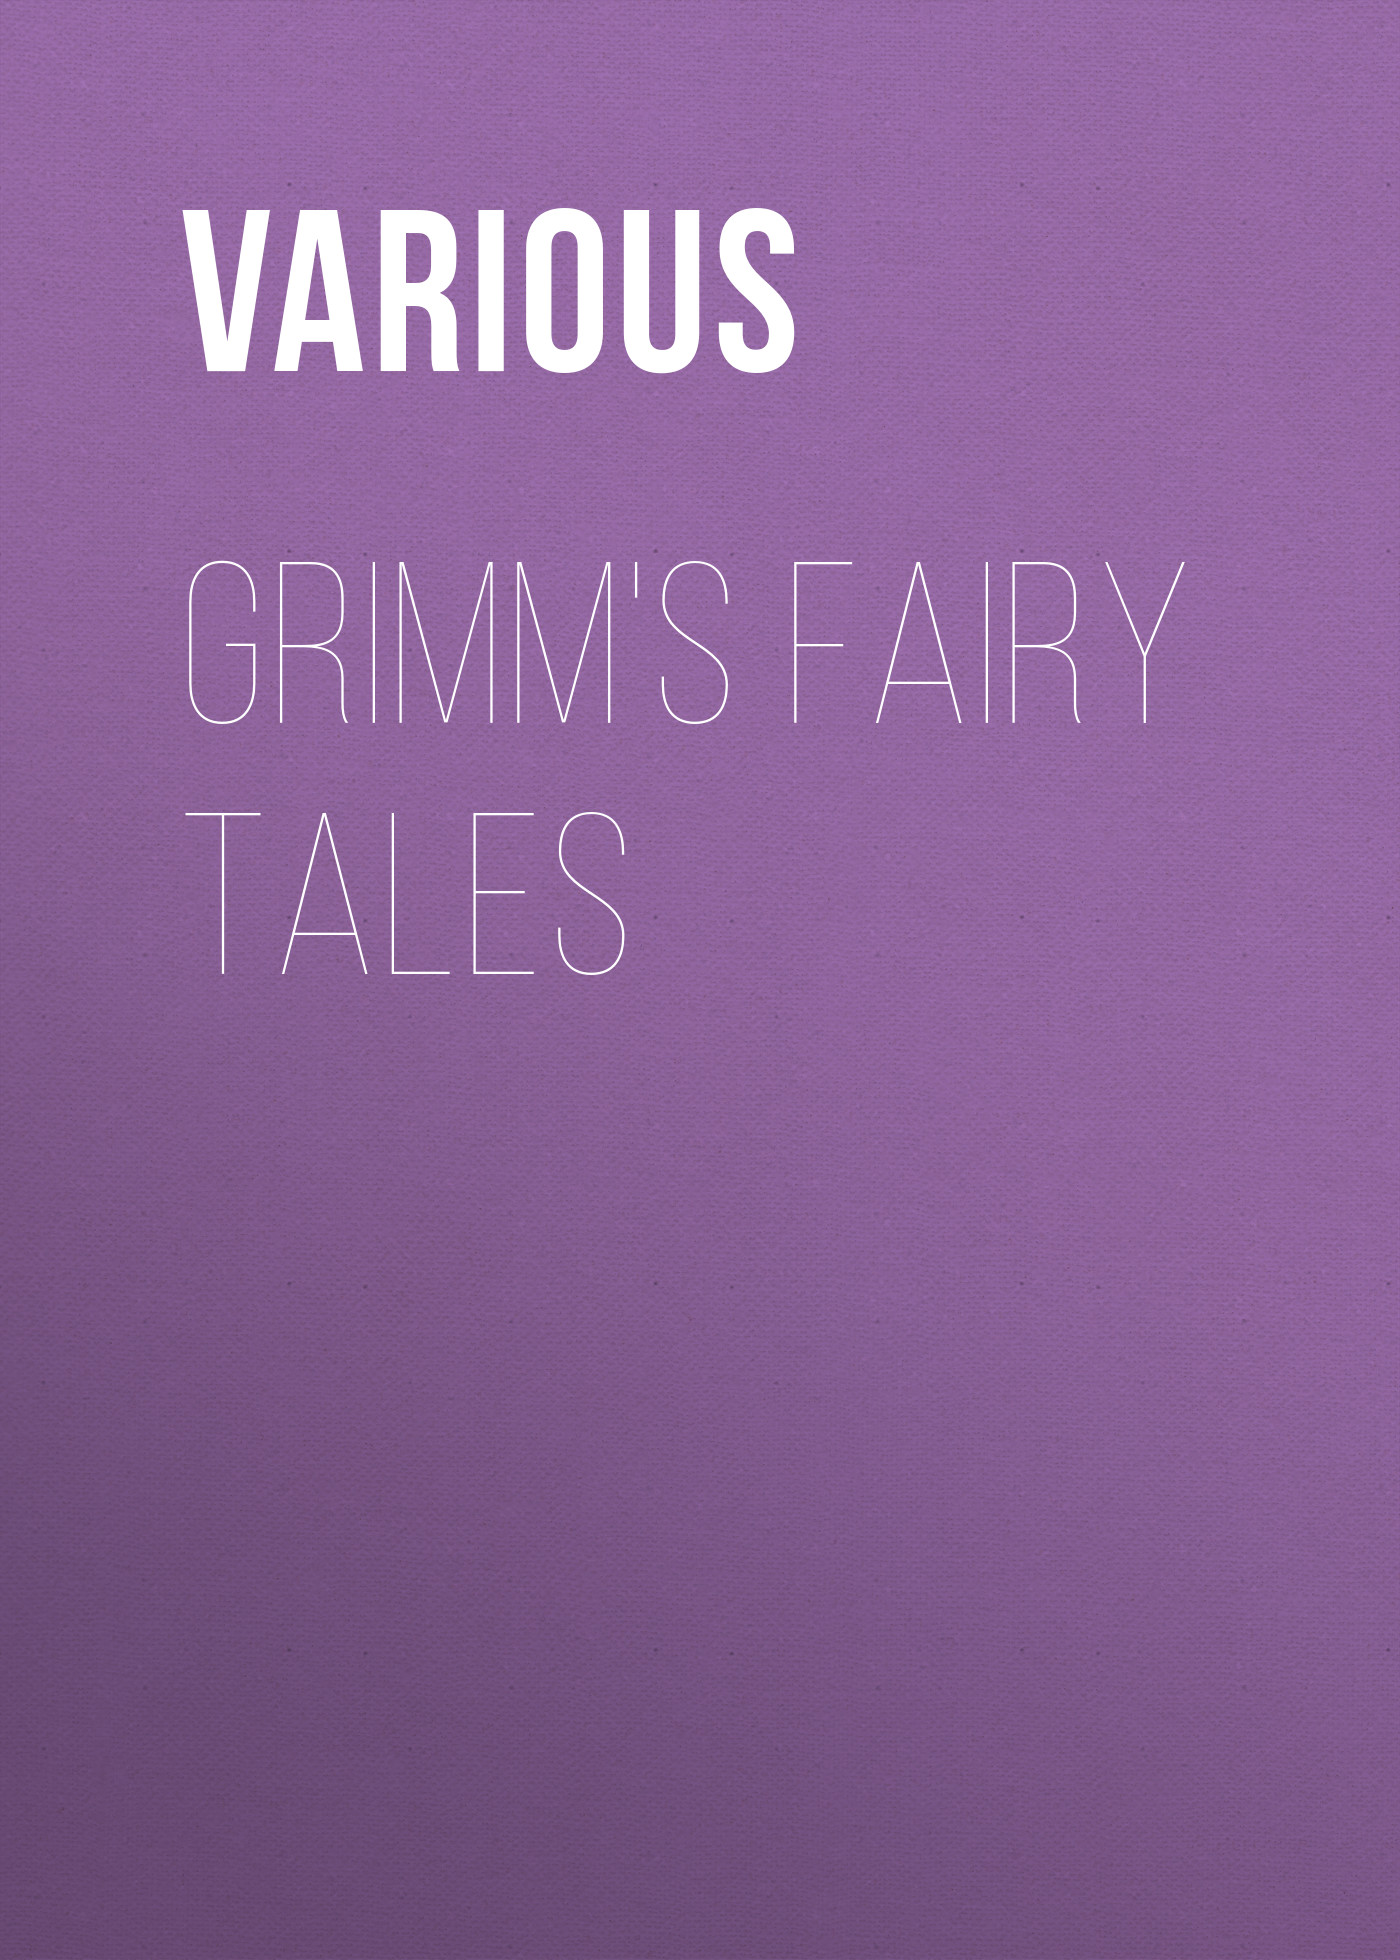 Книга Grimm's Fairy Tales из серии , созданная  Various, может относится к жанру Литература 18 века, Зарубежная классика, Зарубежные детские книги, Сказки, Детская проза. Стоимость электронной книги Grimm's Fairy Tales с идентификатором 25715326 составляет 0 руб.